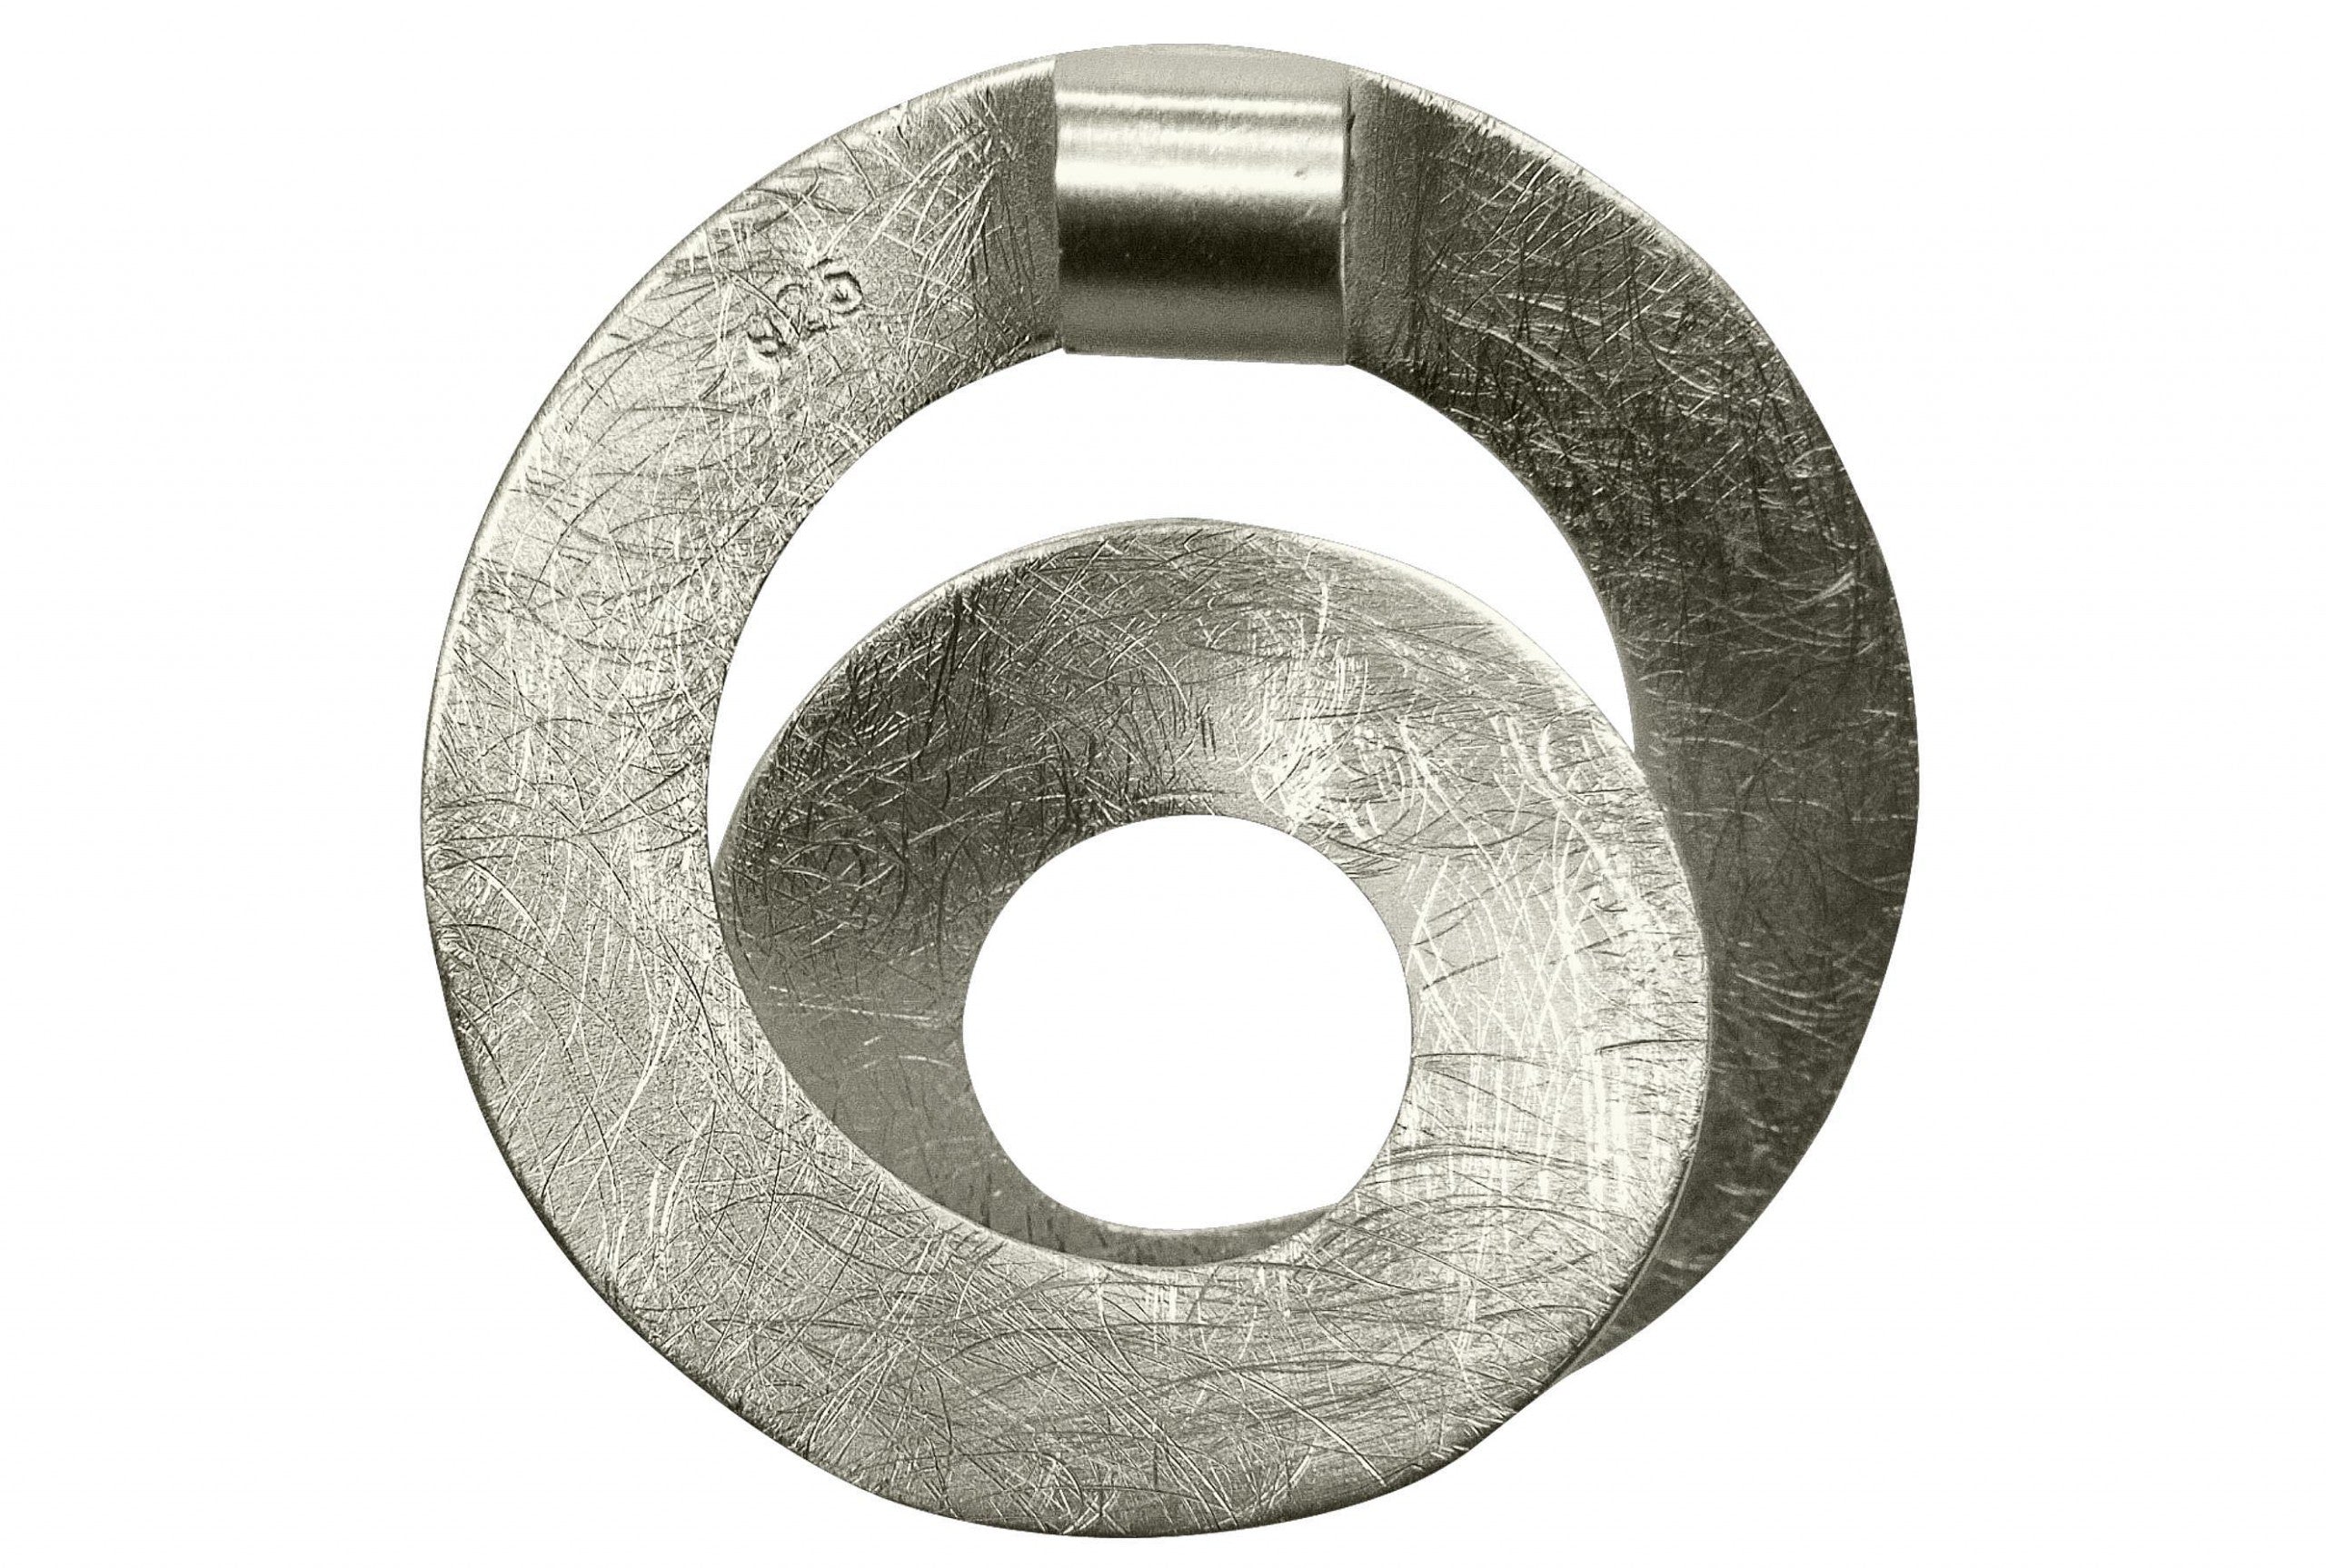 Silberner Kettenanhänger in Loopdesign mit gebürsteter Oberfläche. Man sieht die Stempelung des Echtsilber-Siegels. 